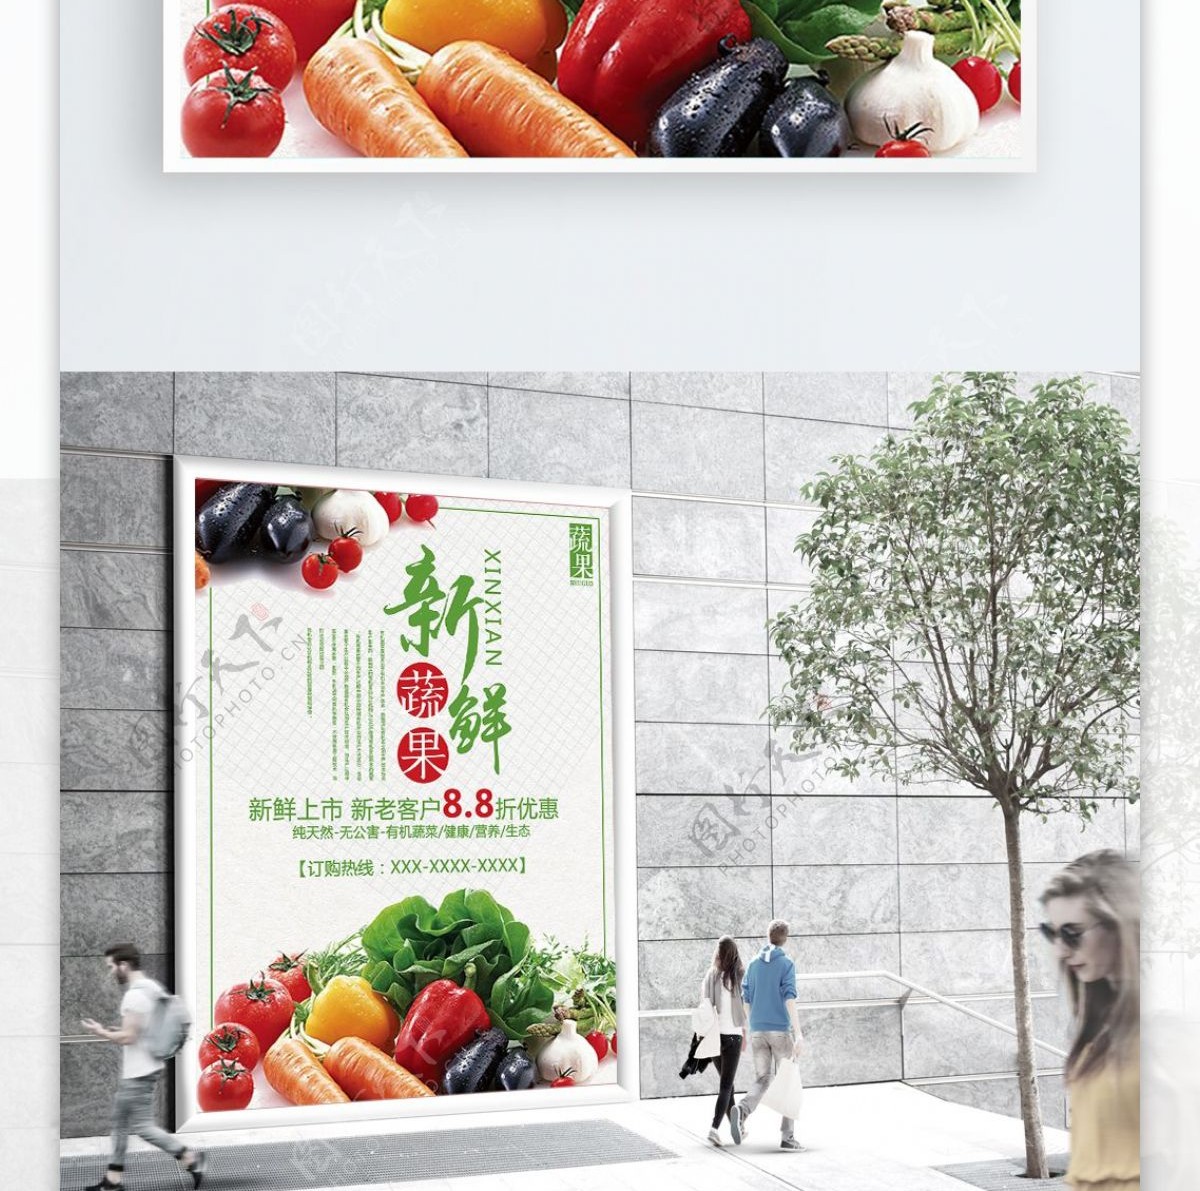 绿色清新新鲜蔬菜促销海报